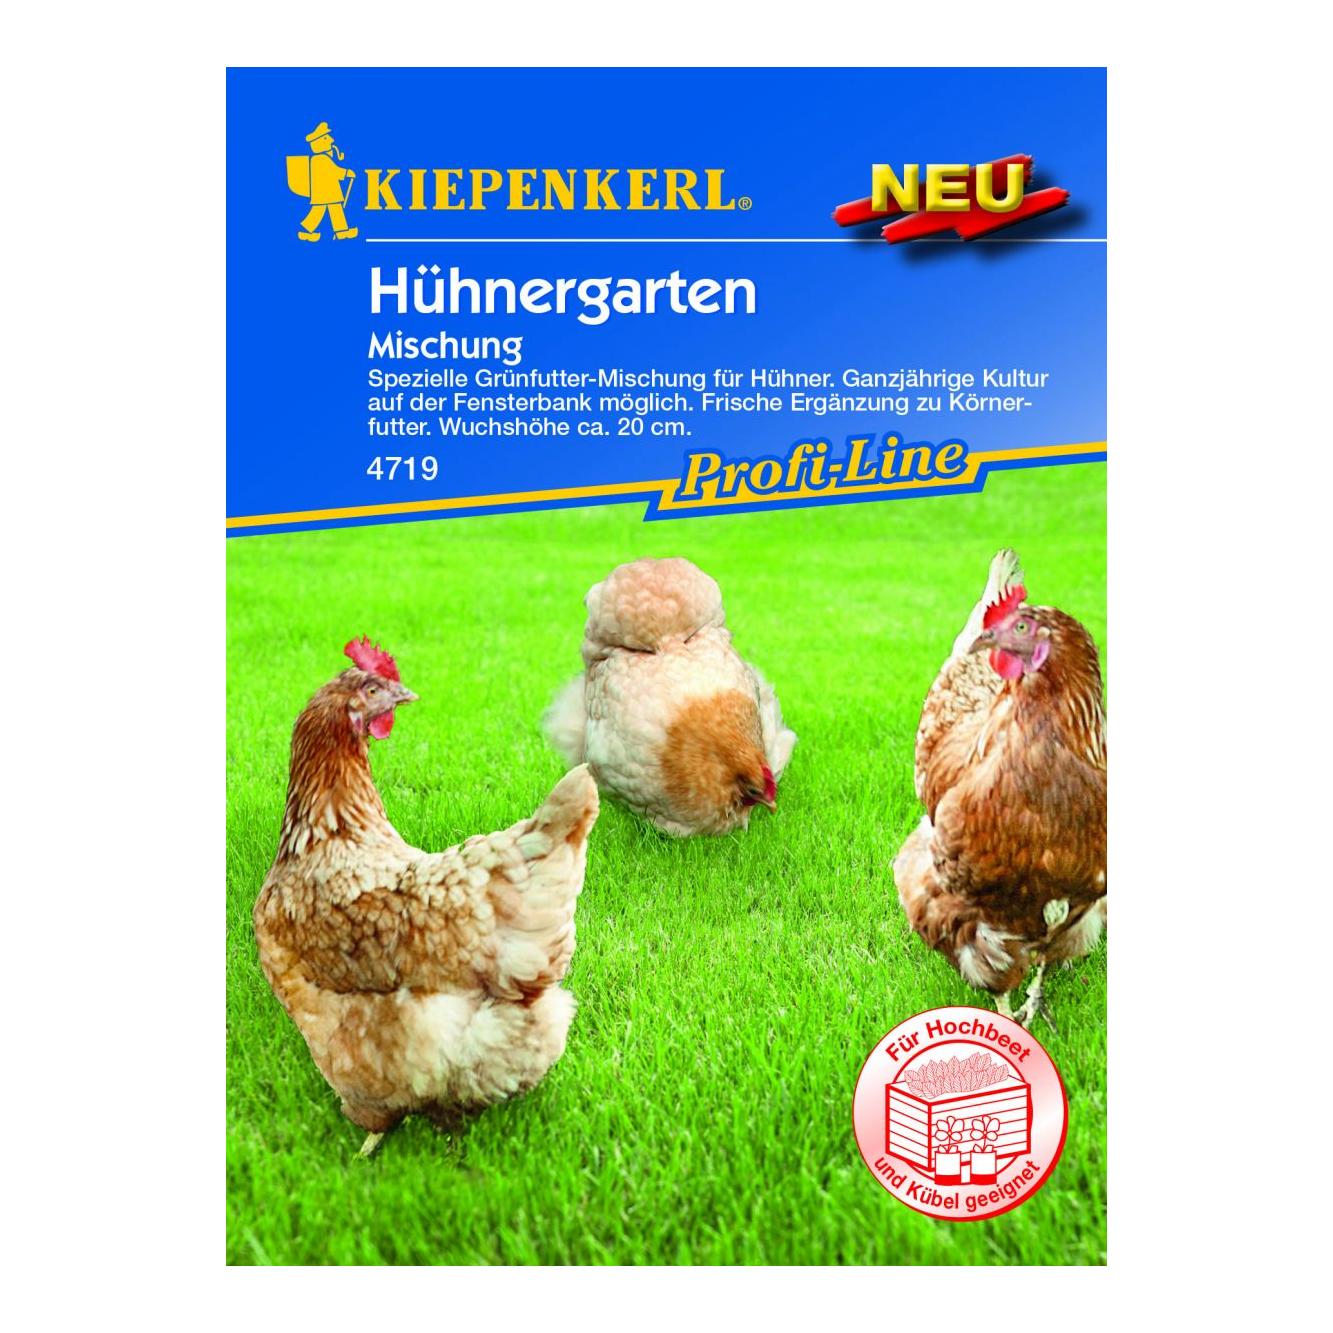 Image of Kiepenkerl Grünfuttermischung für Hühner - Hühnergarten bei Hauptner.ch